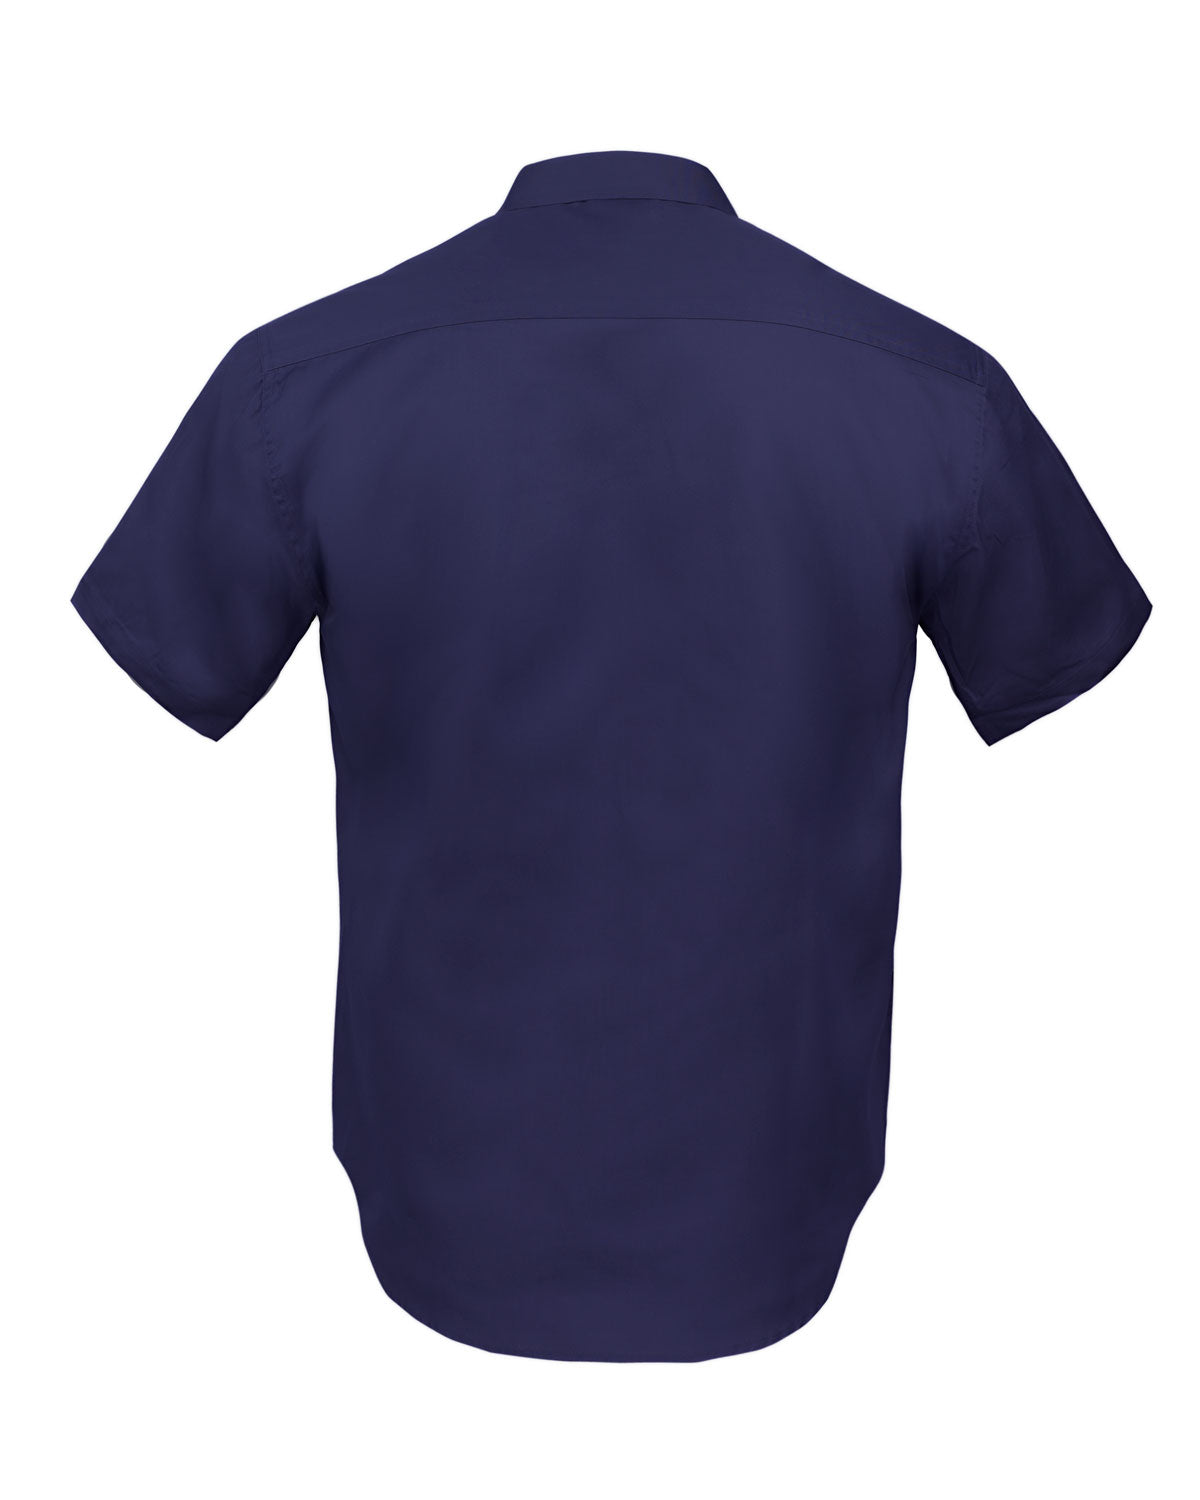 KS03 - Kolossus Men's Lightweight Cotton Blend Short Sleeve Work Shirt ...